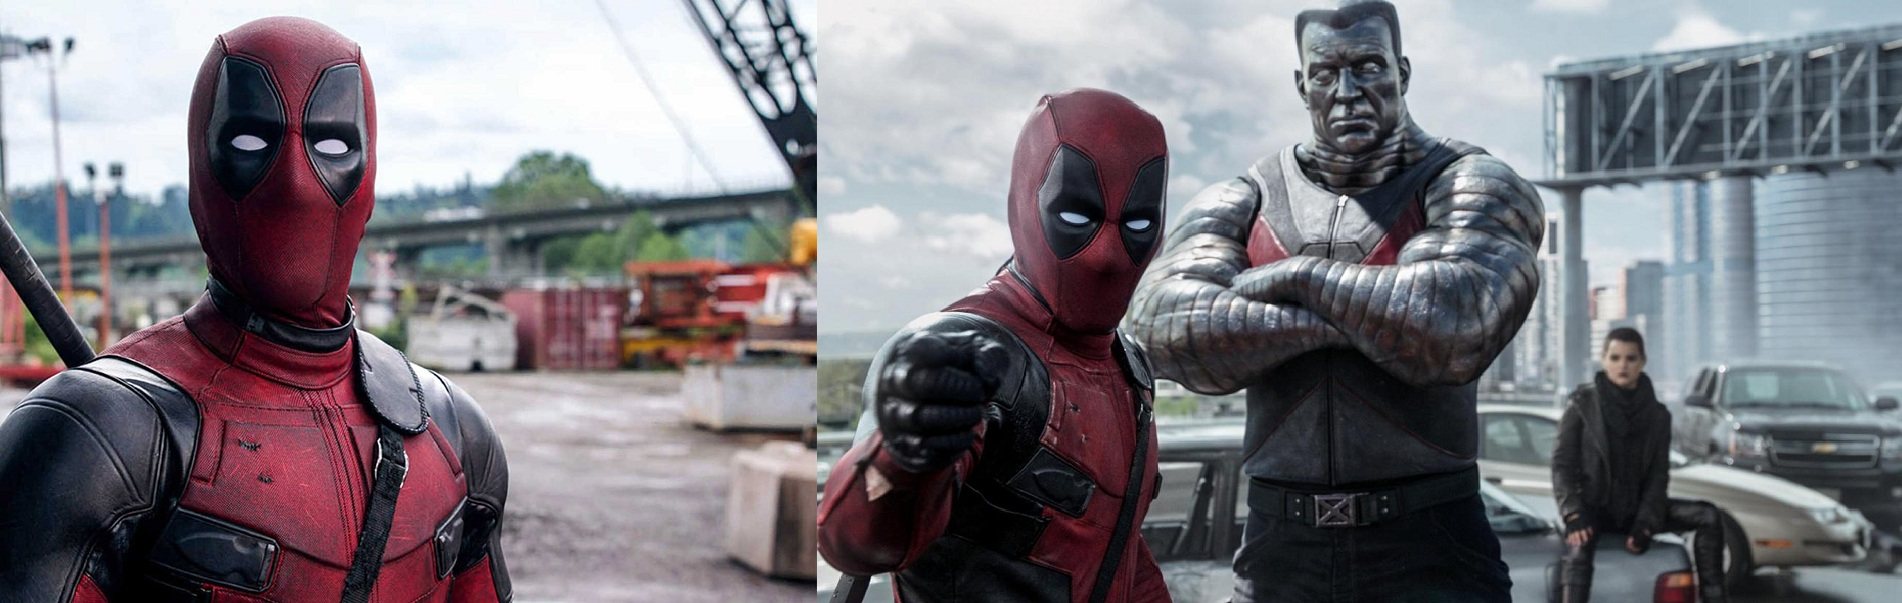 Deadpool 2 movie review: Ryan Reynolds, Ranvir singh voices the anti hero